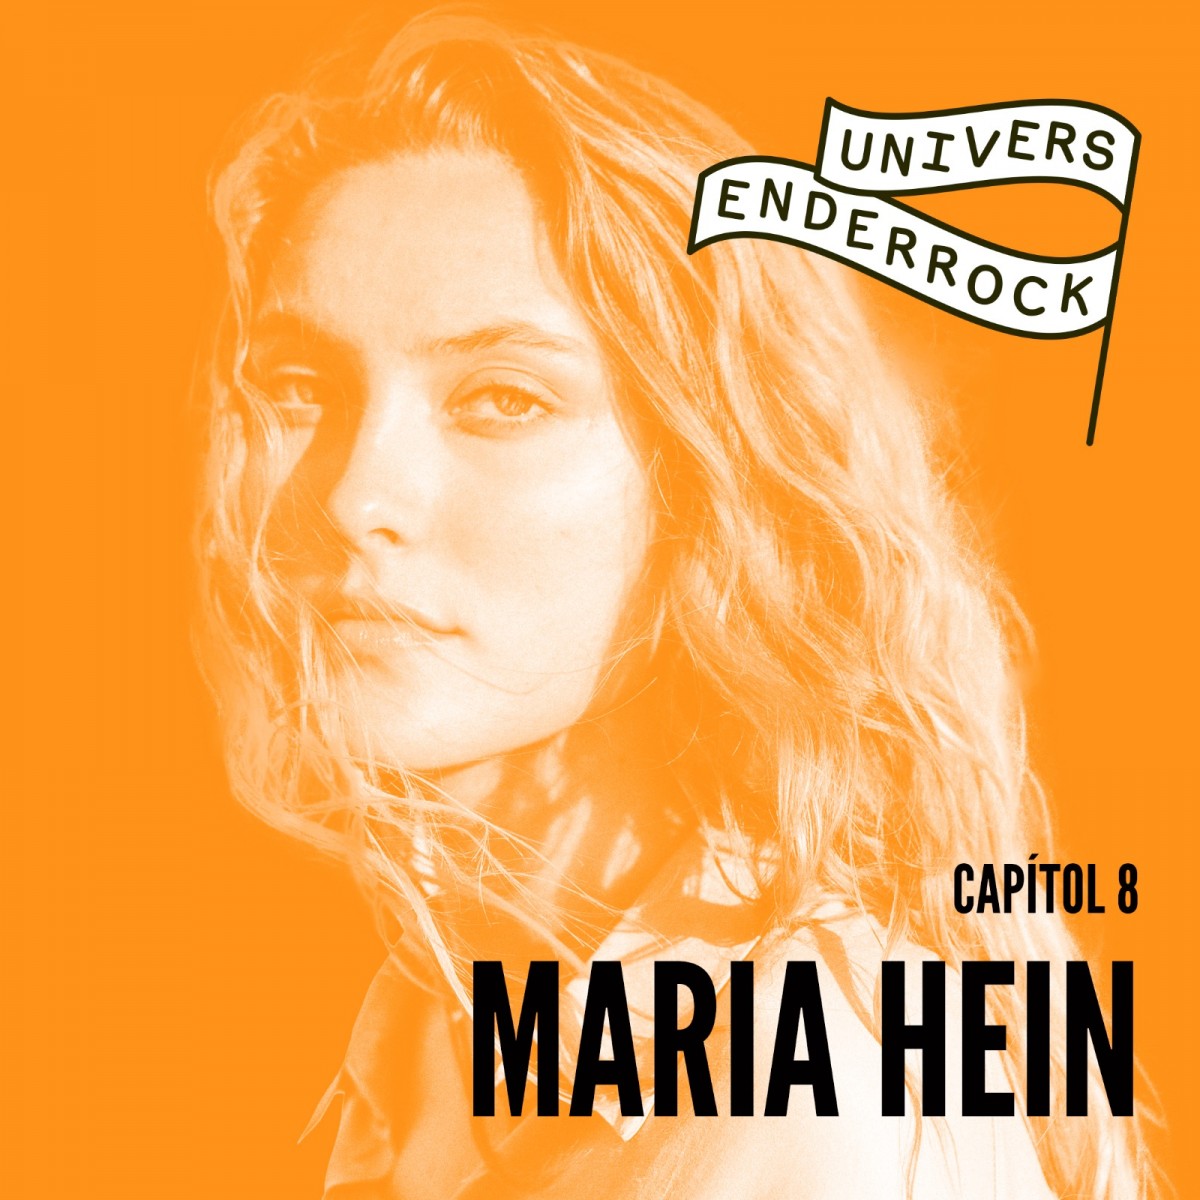 Vuitè episodi d''Univers Enderrock' amb Maria Hein